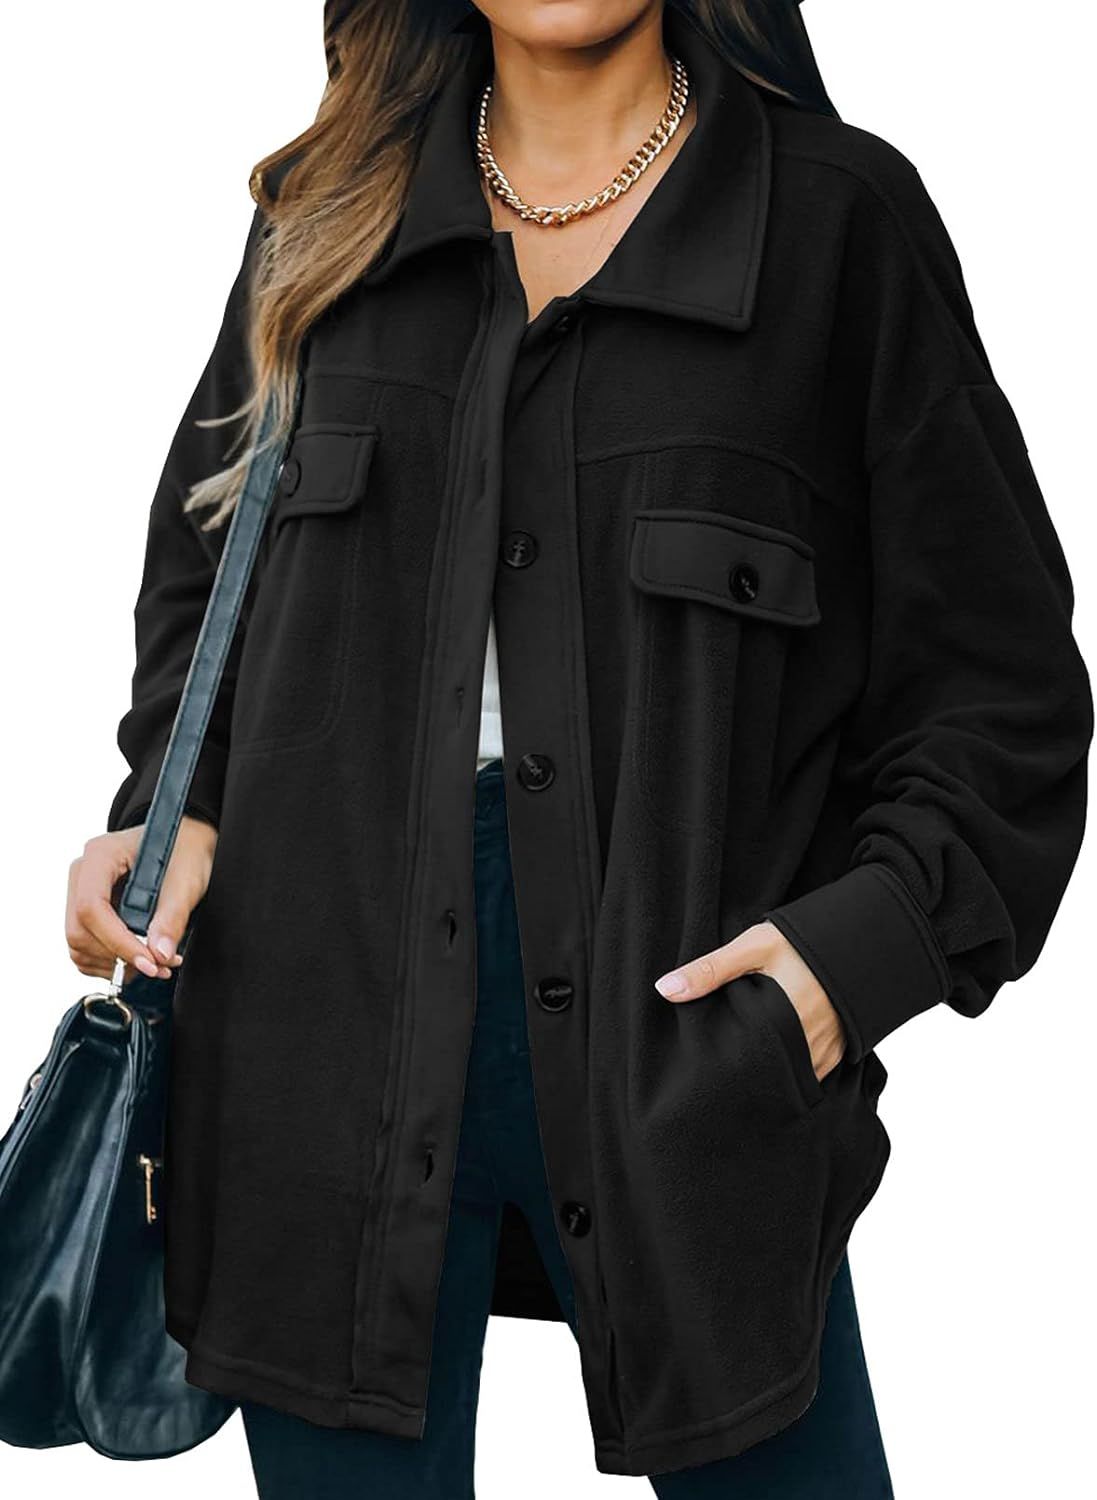 Astylish Womens Casual Coat Long Sleeve Shacket Shirt Jacket with Pockets | Amazon (US)